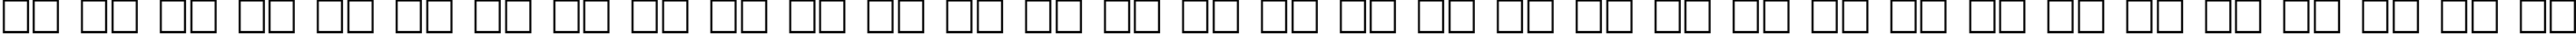 Пример написания русского алфавита шрифтом Penshurst Bold